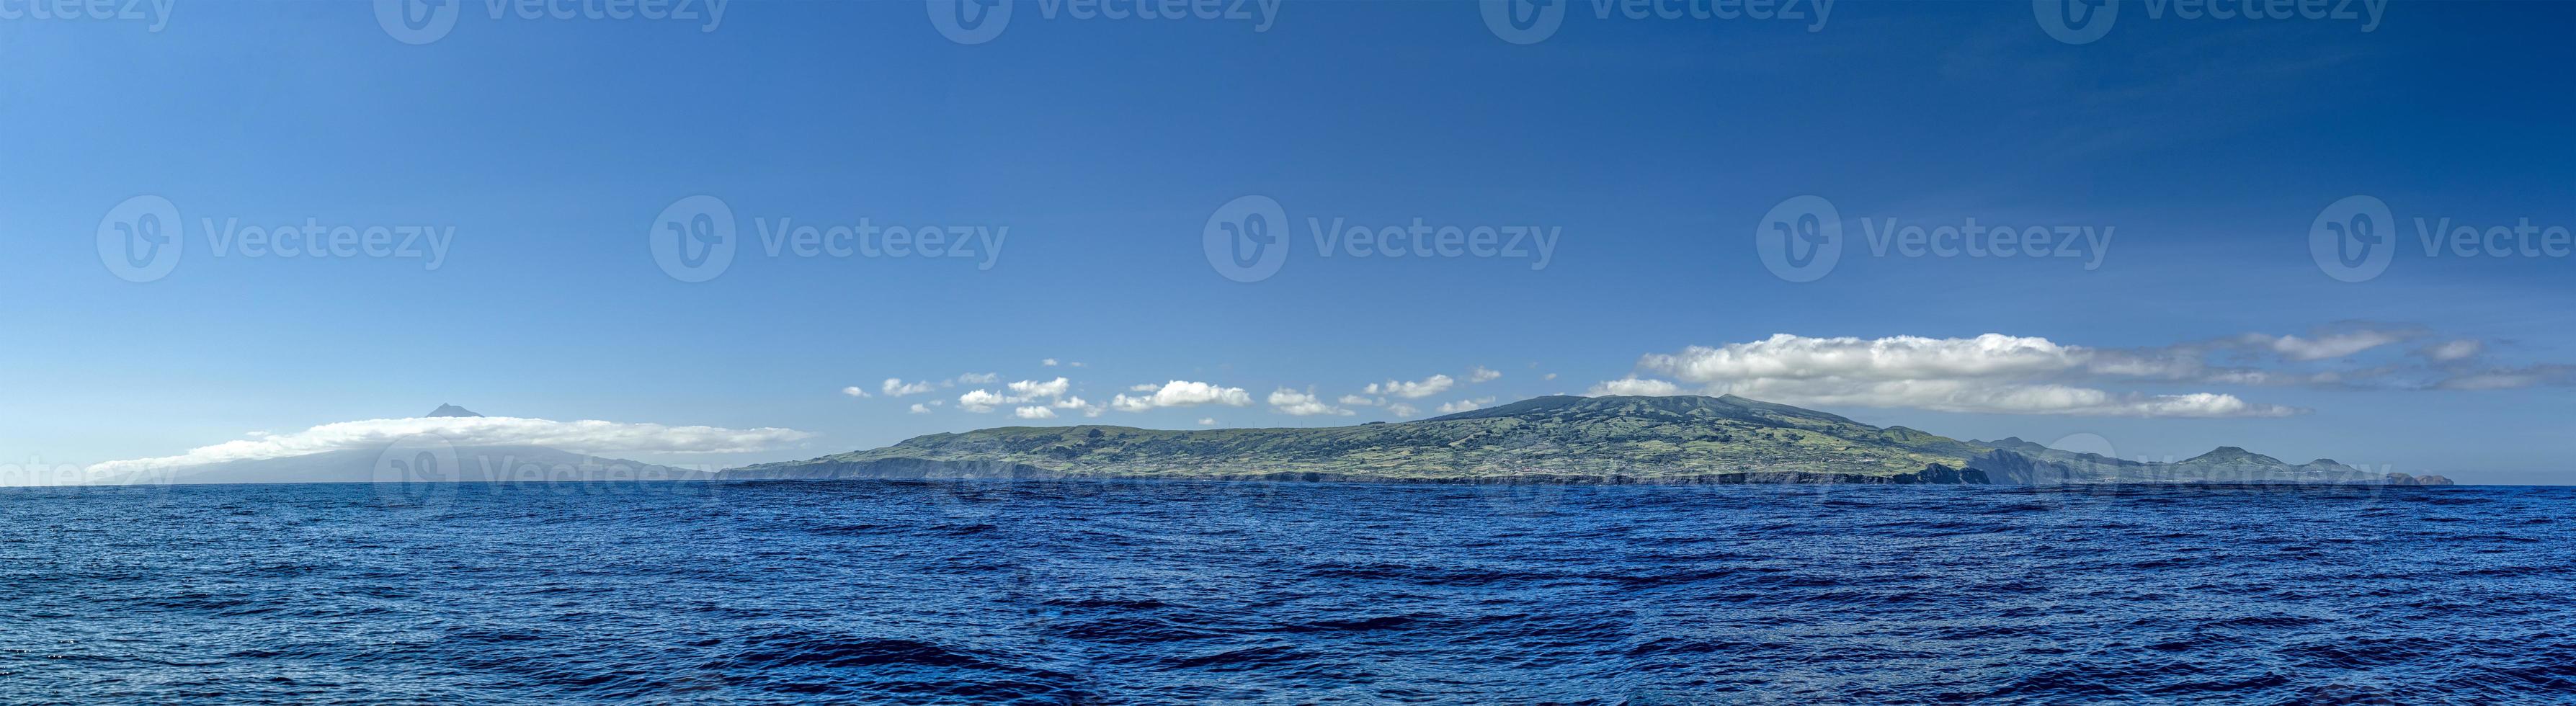 faial en pico eiland azoren panorama van de oceaan foto